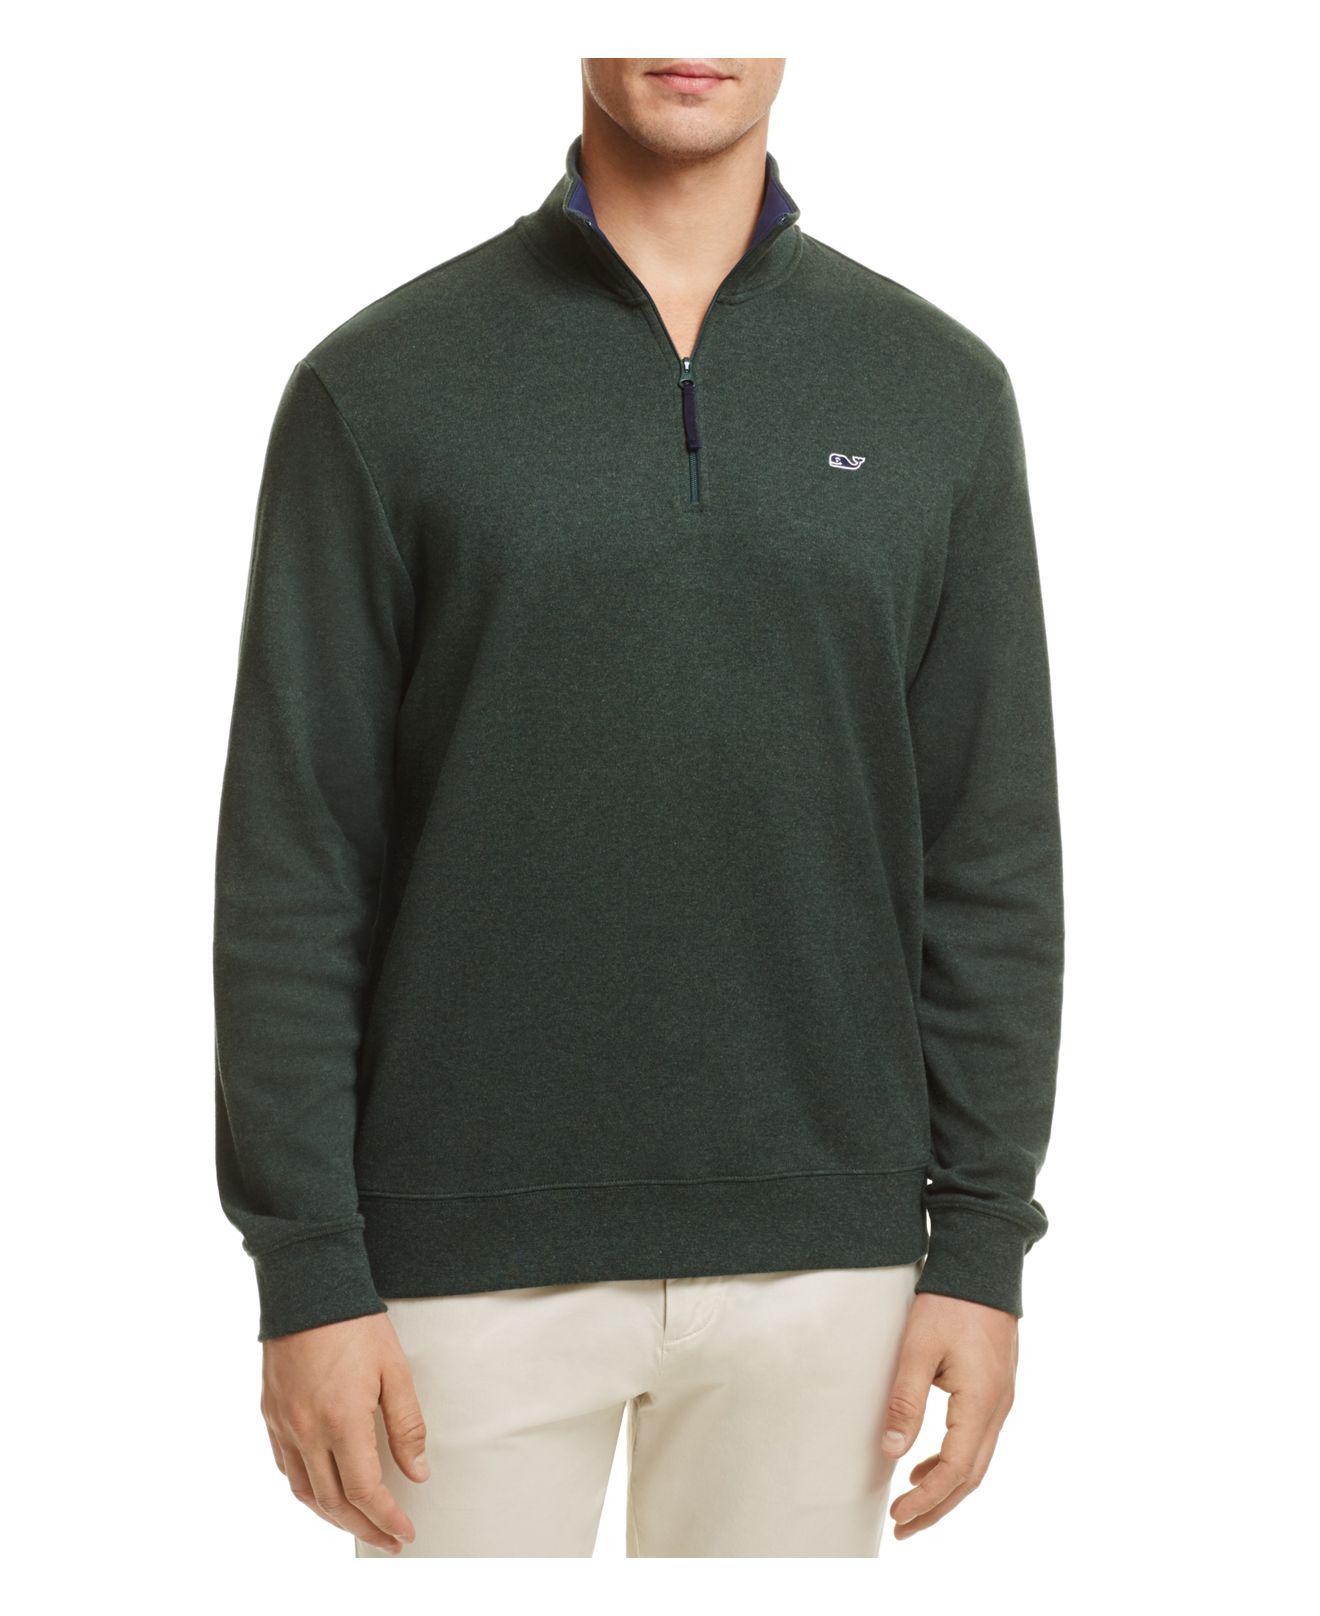 Lyst - Vineyard Vines Quarter-zip Cotton Sweater in Green for Men